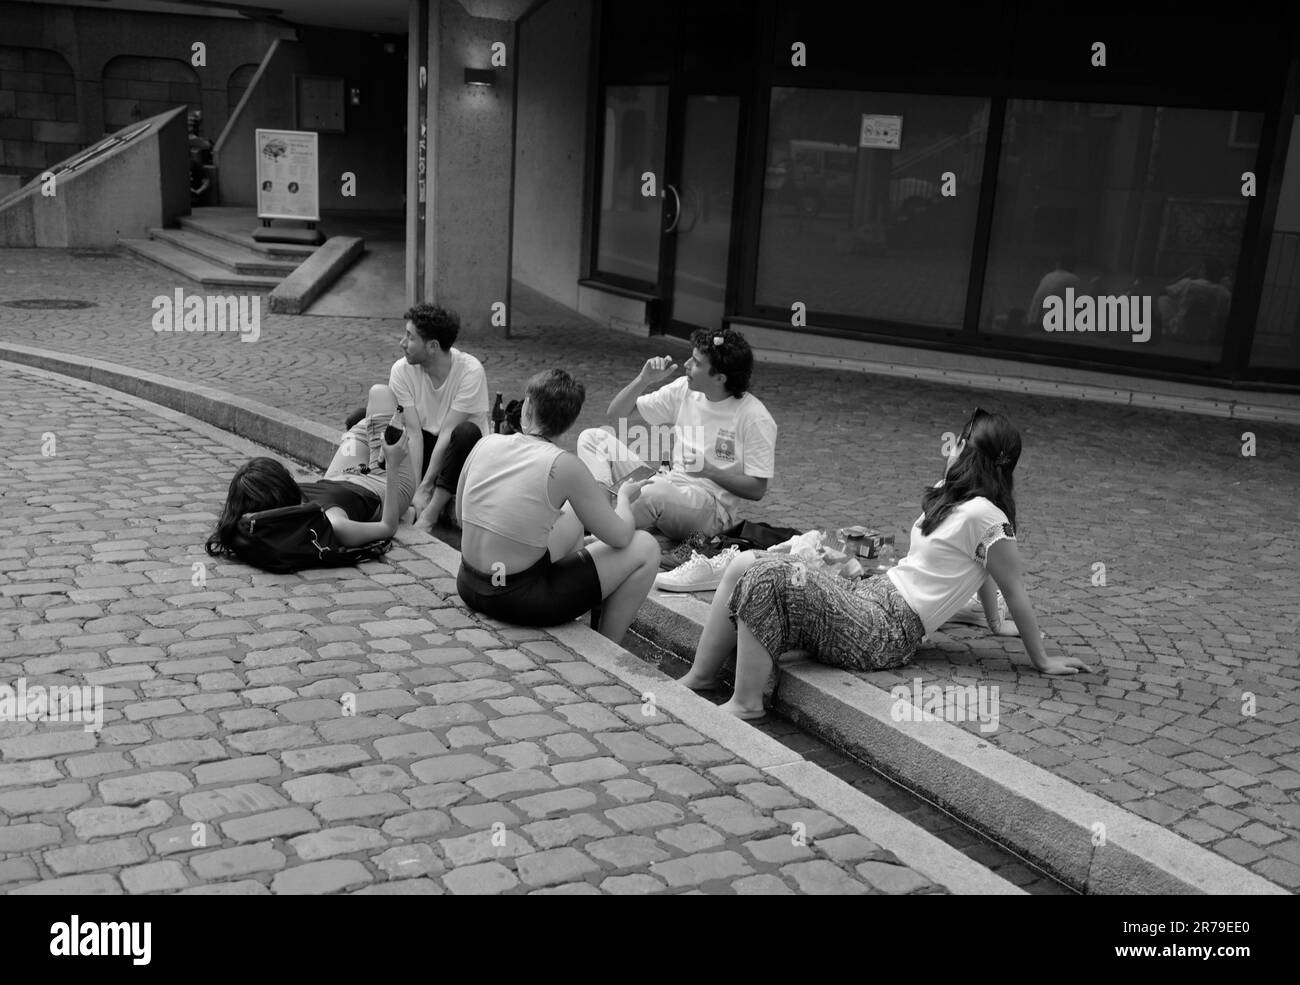 Los estudiantes se relajan en los arroyos de la calle en Friburgo de Brisgovia Foto de stock